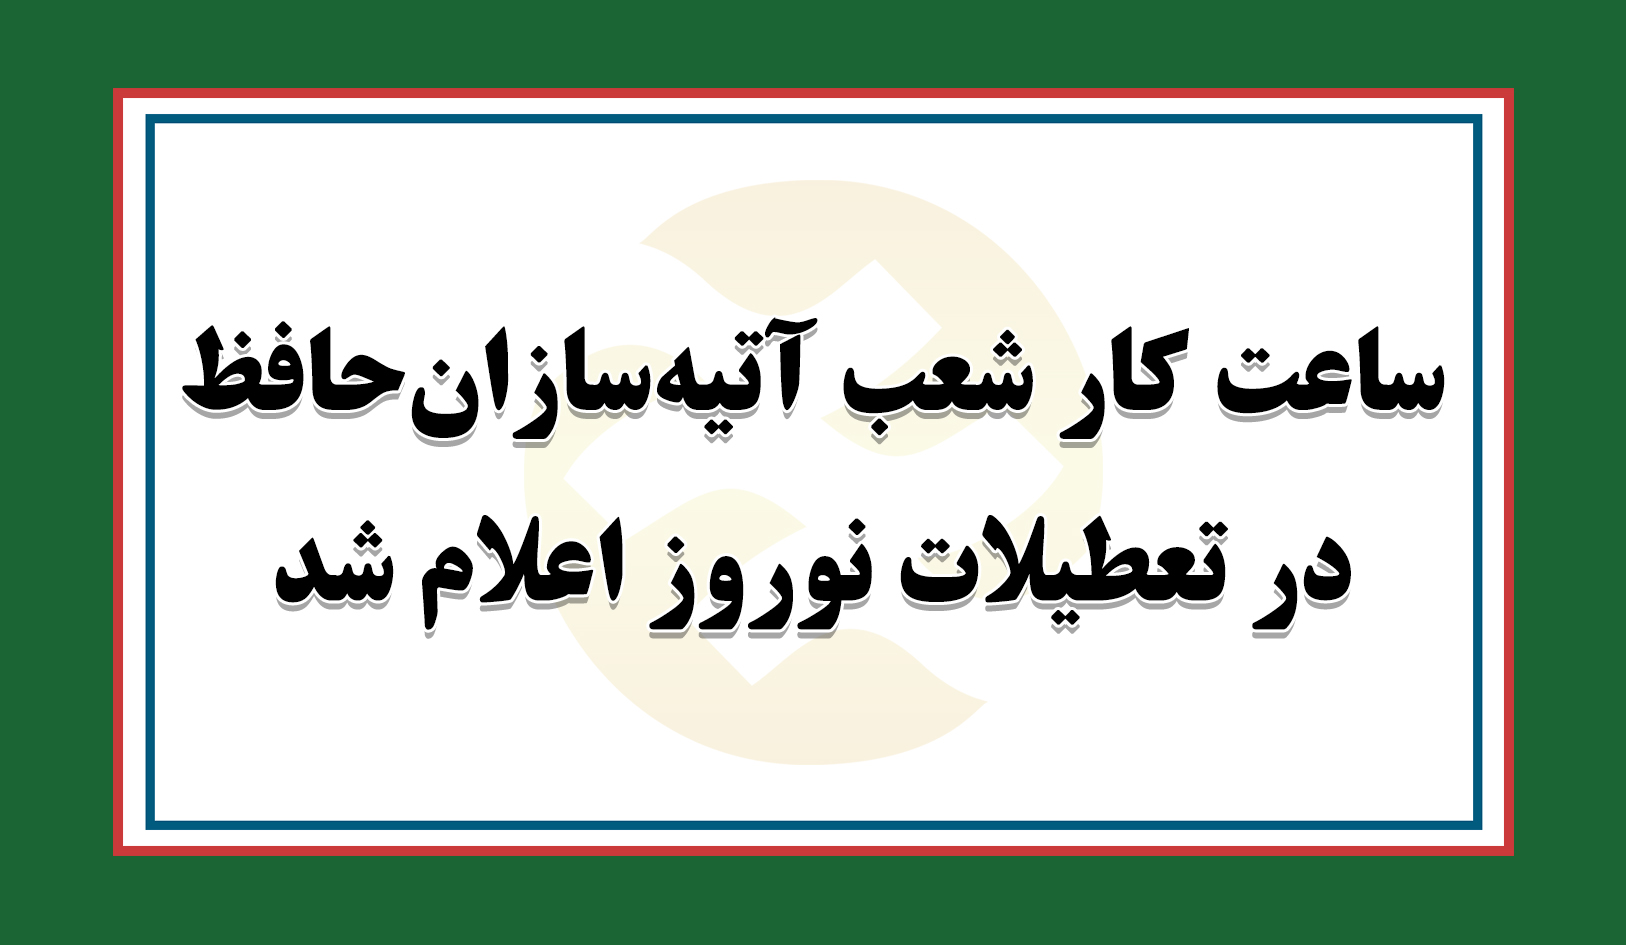 ساعت کار شعب آتیه سازان حافظ درتعطیلات نوروز اعلام شد